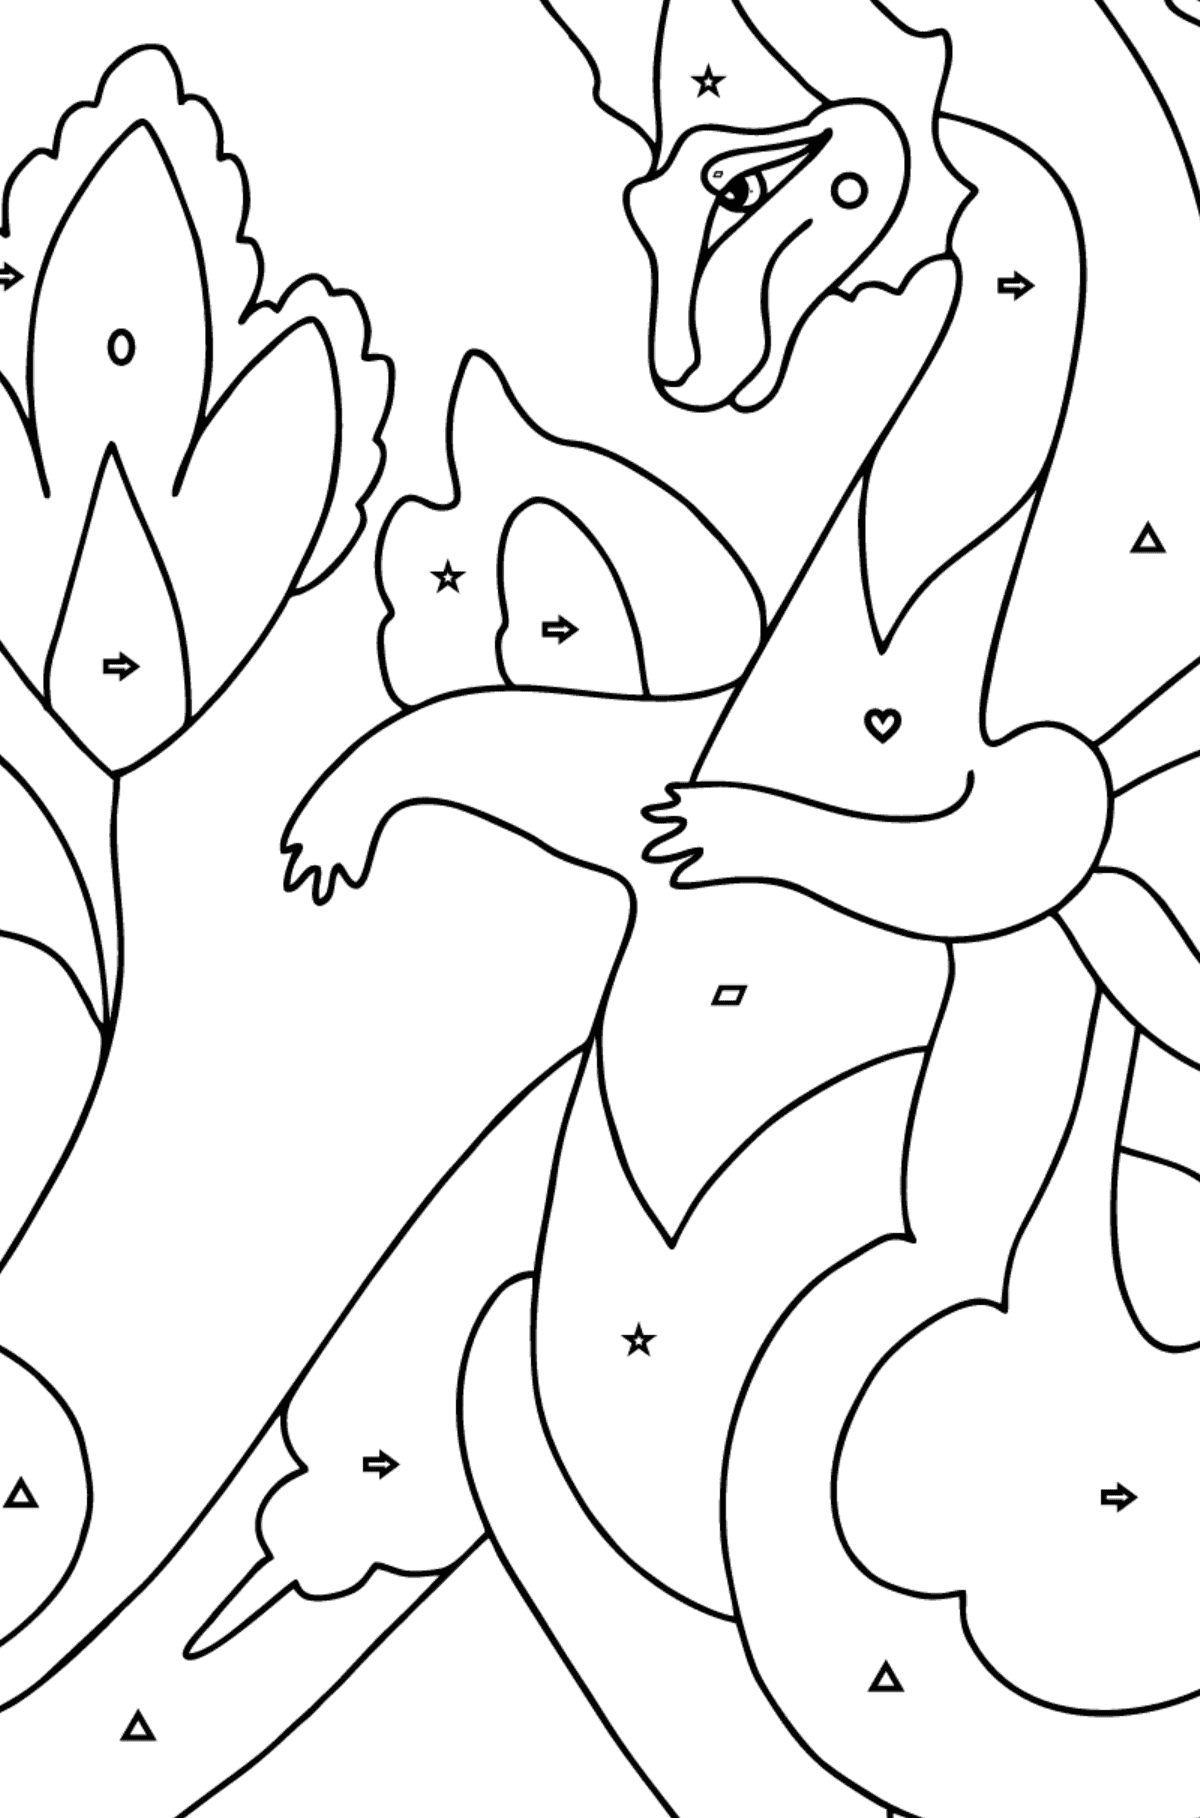 Coloriage Dragon et fleur (difficile) - Coloriage par Formes Géométriques pour les Enfants